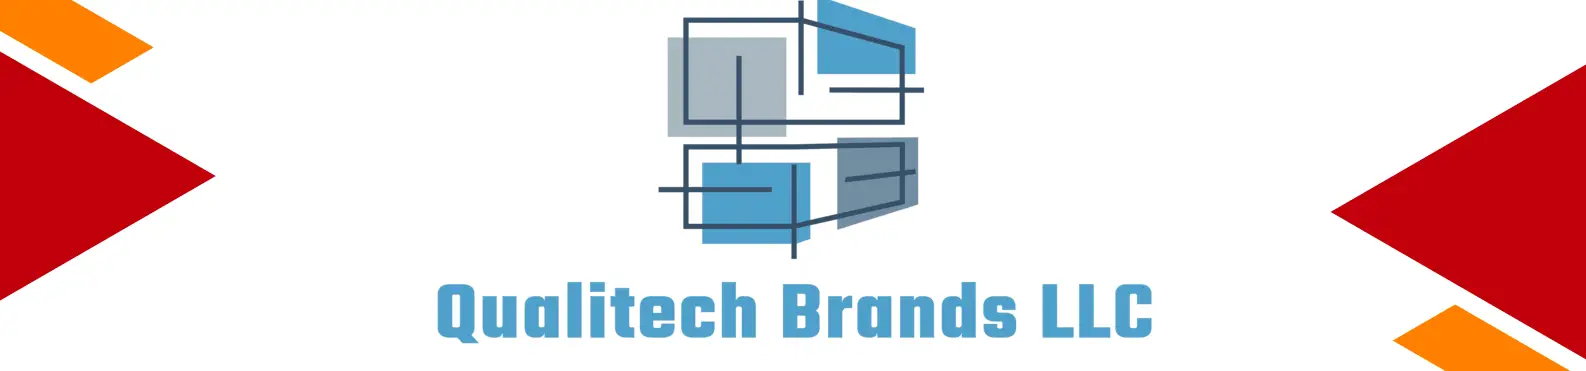 Business logo of Qualitech Brands LLC